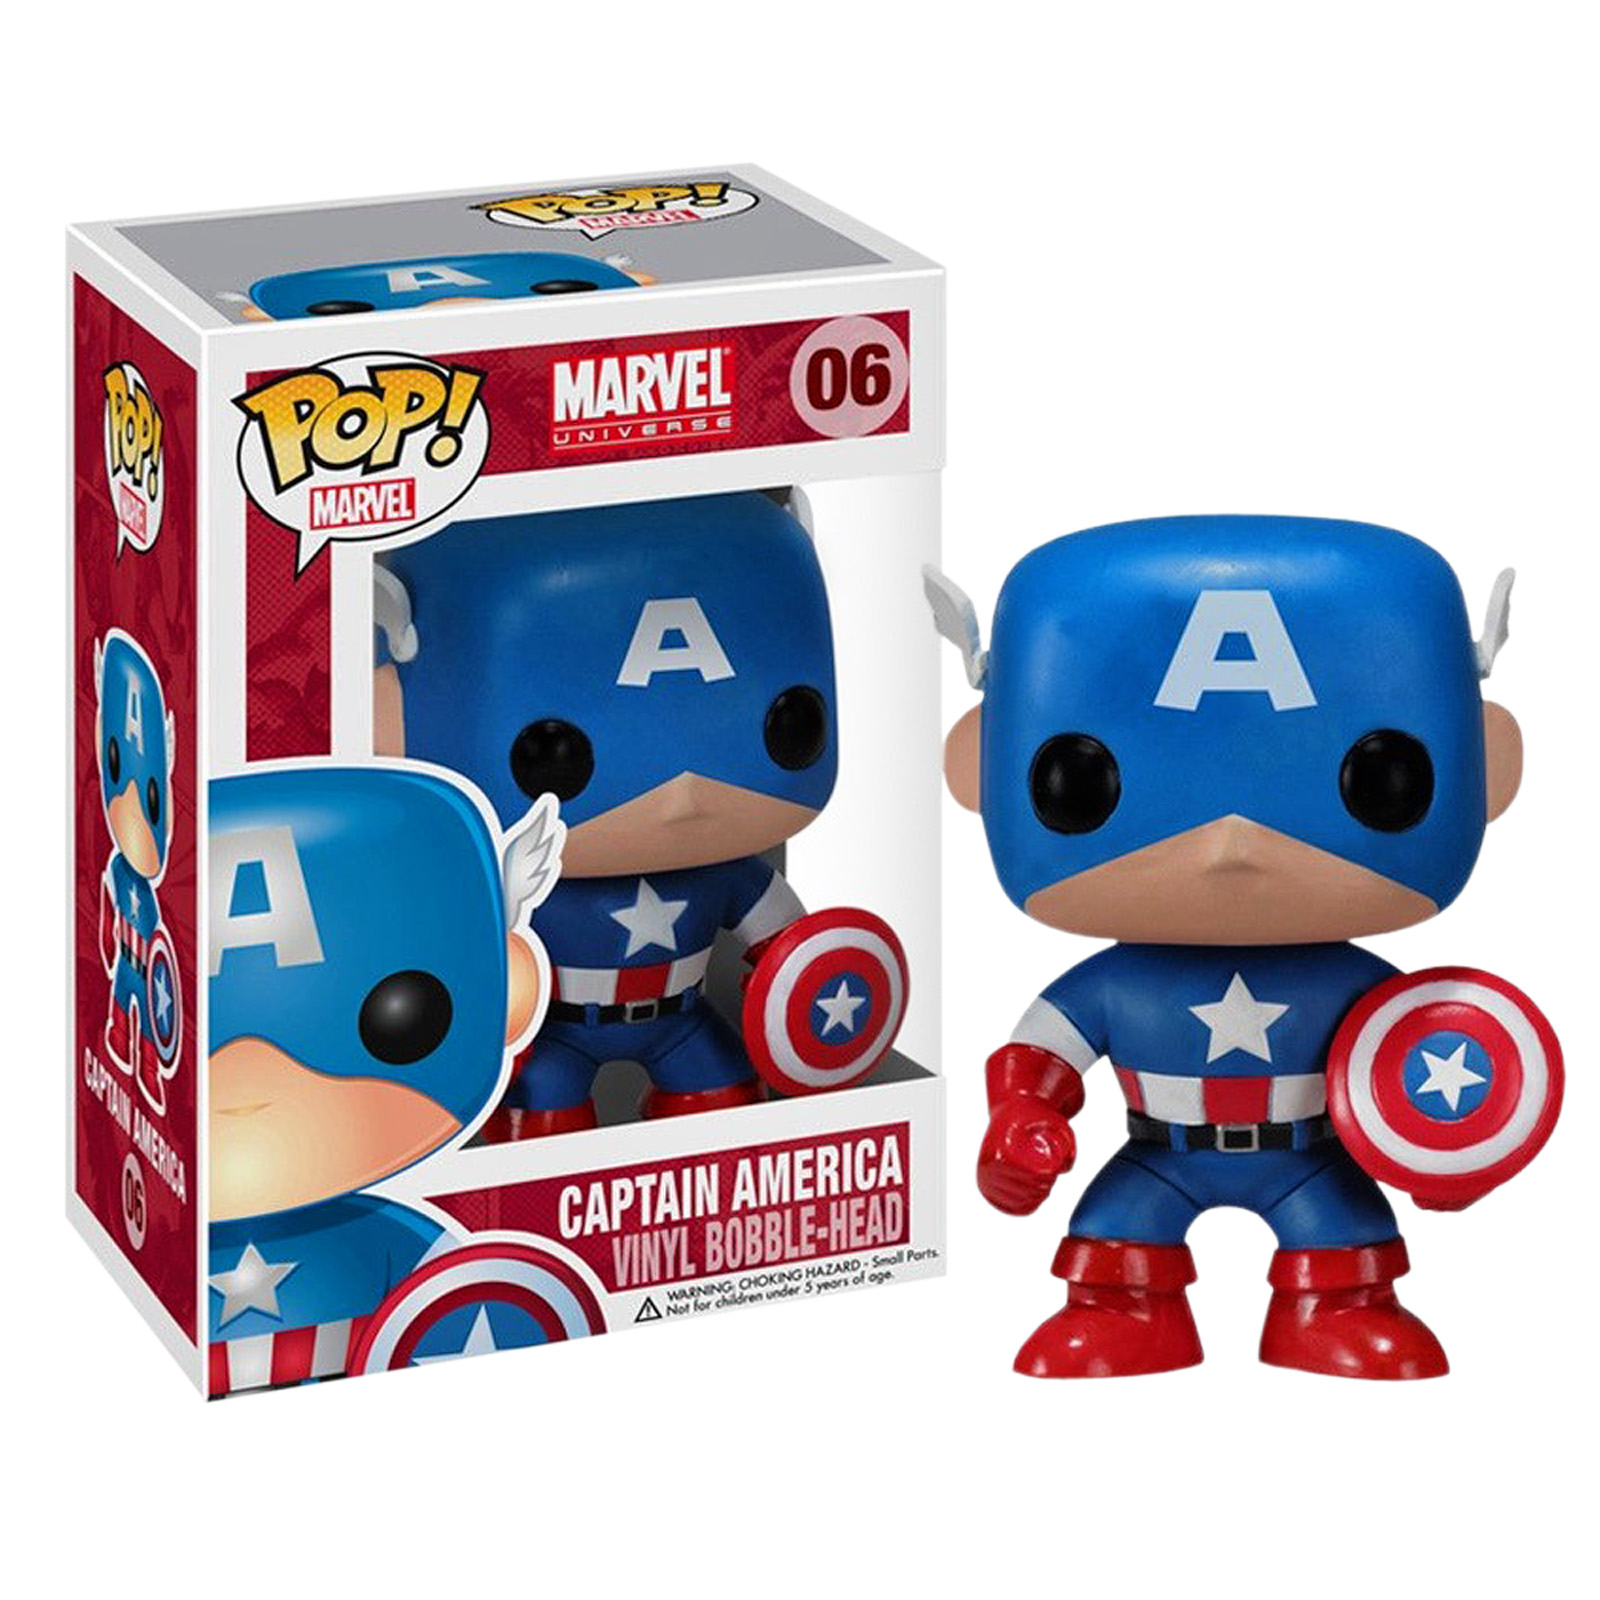 Captain America - Marvel Bobblehead Figuur